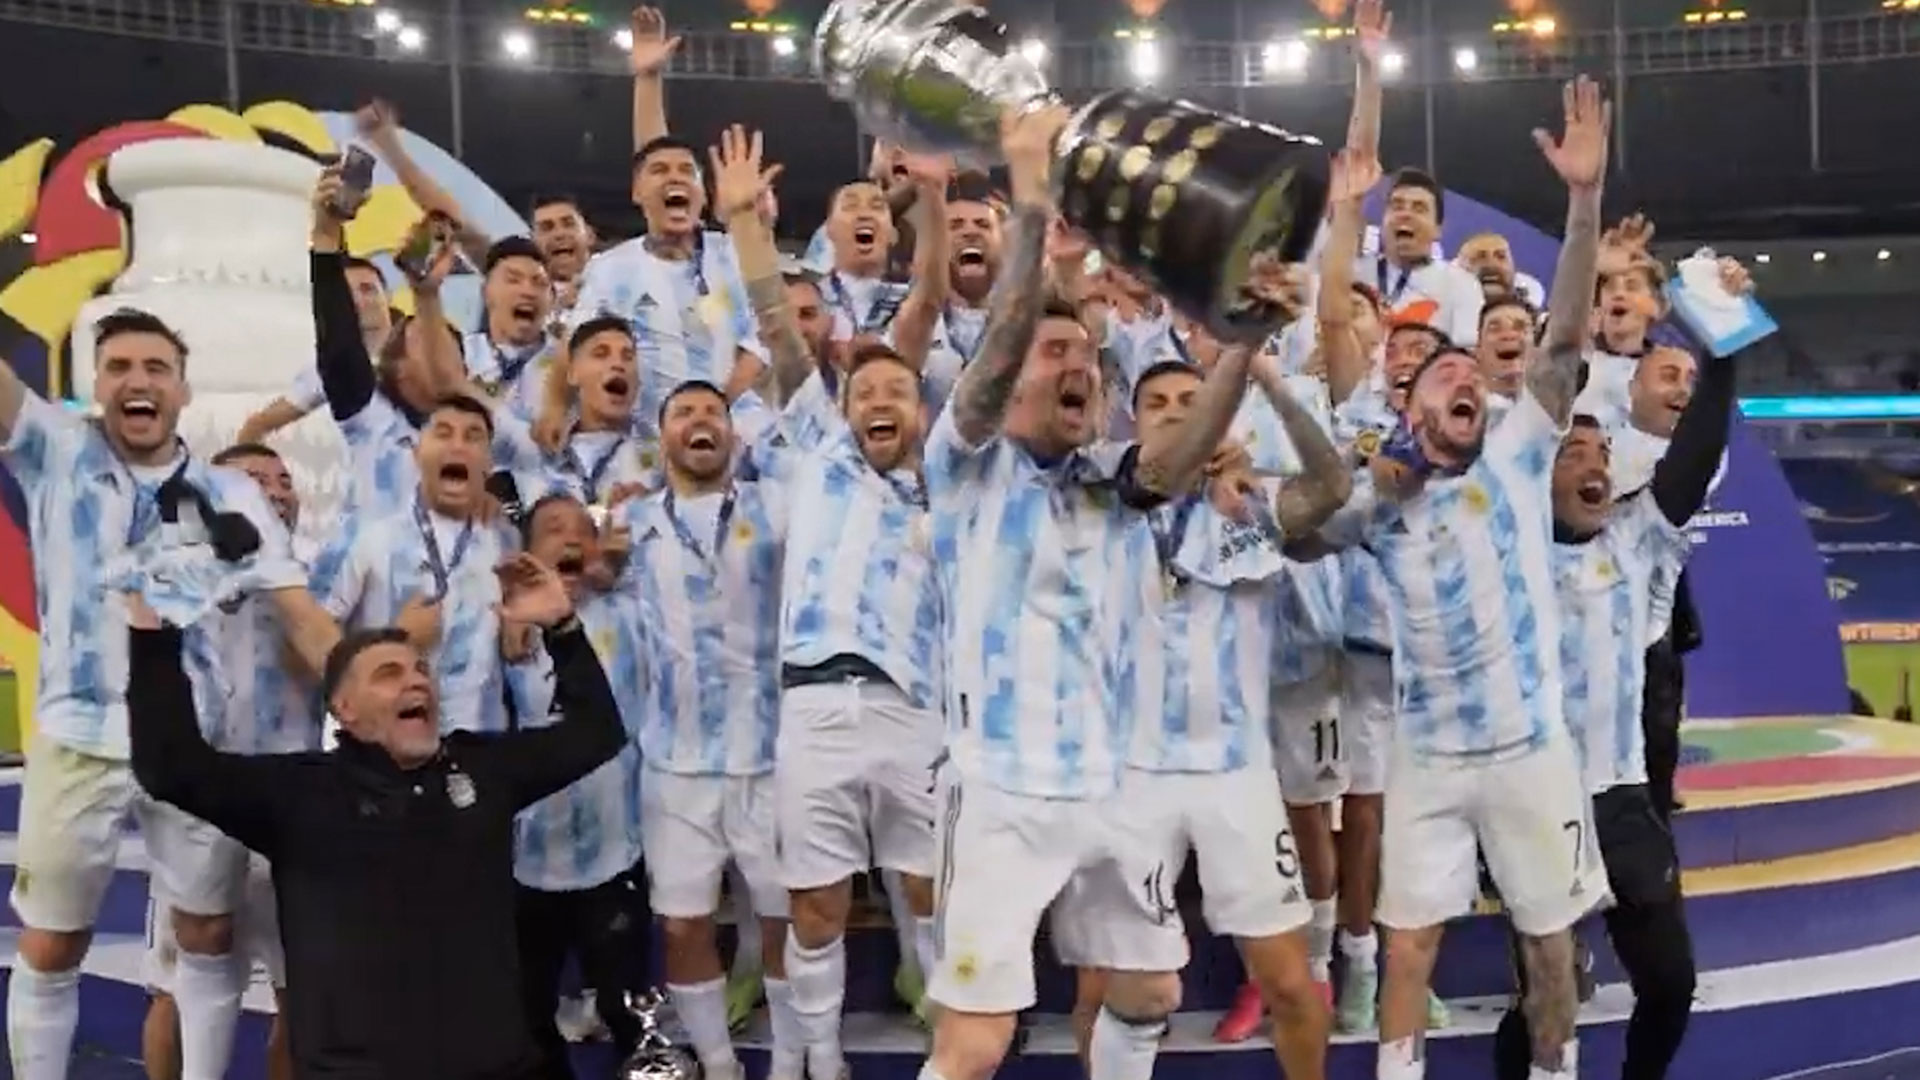 "Sean eternos: Campeones de América": Un recorrido por la obtención de la Copa América por parte de Argentina